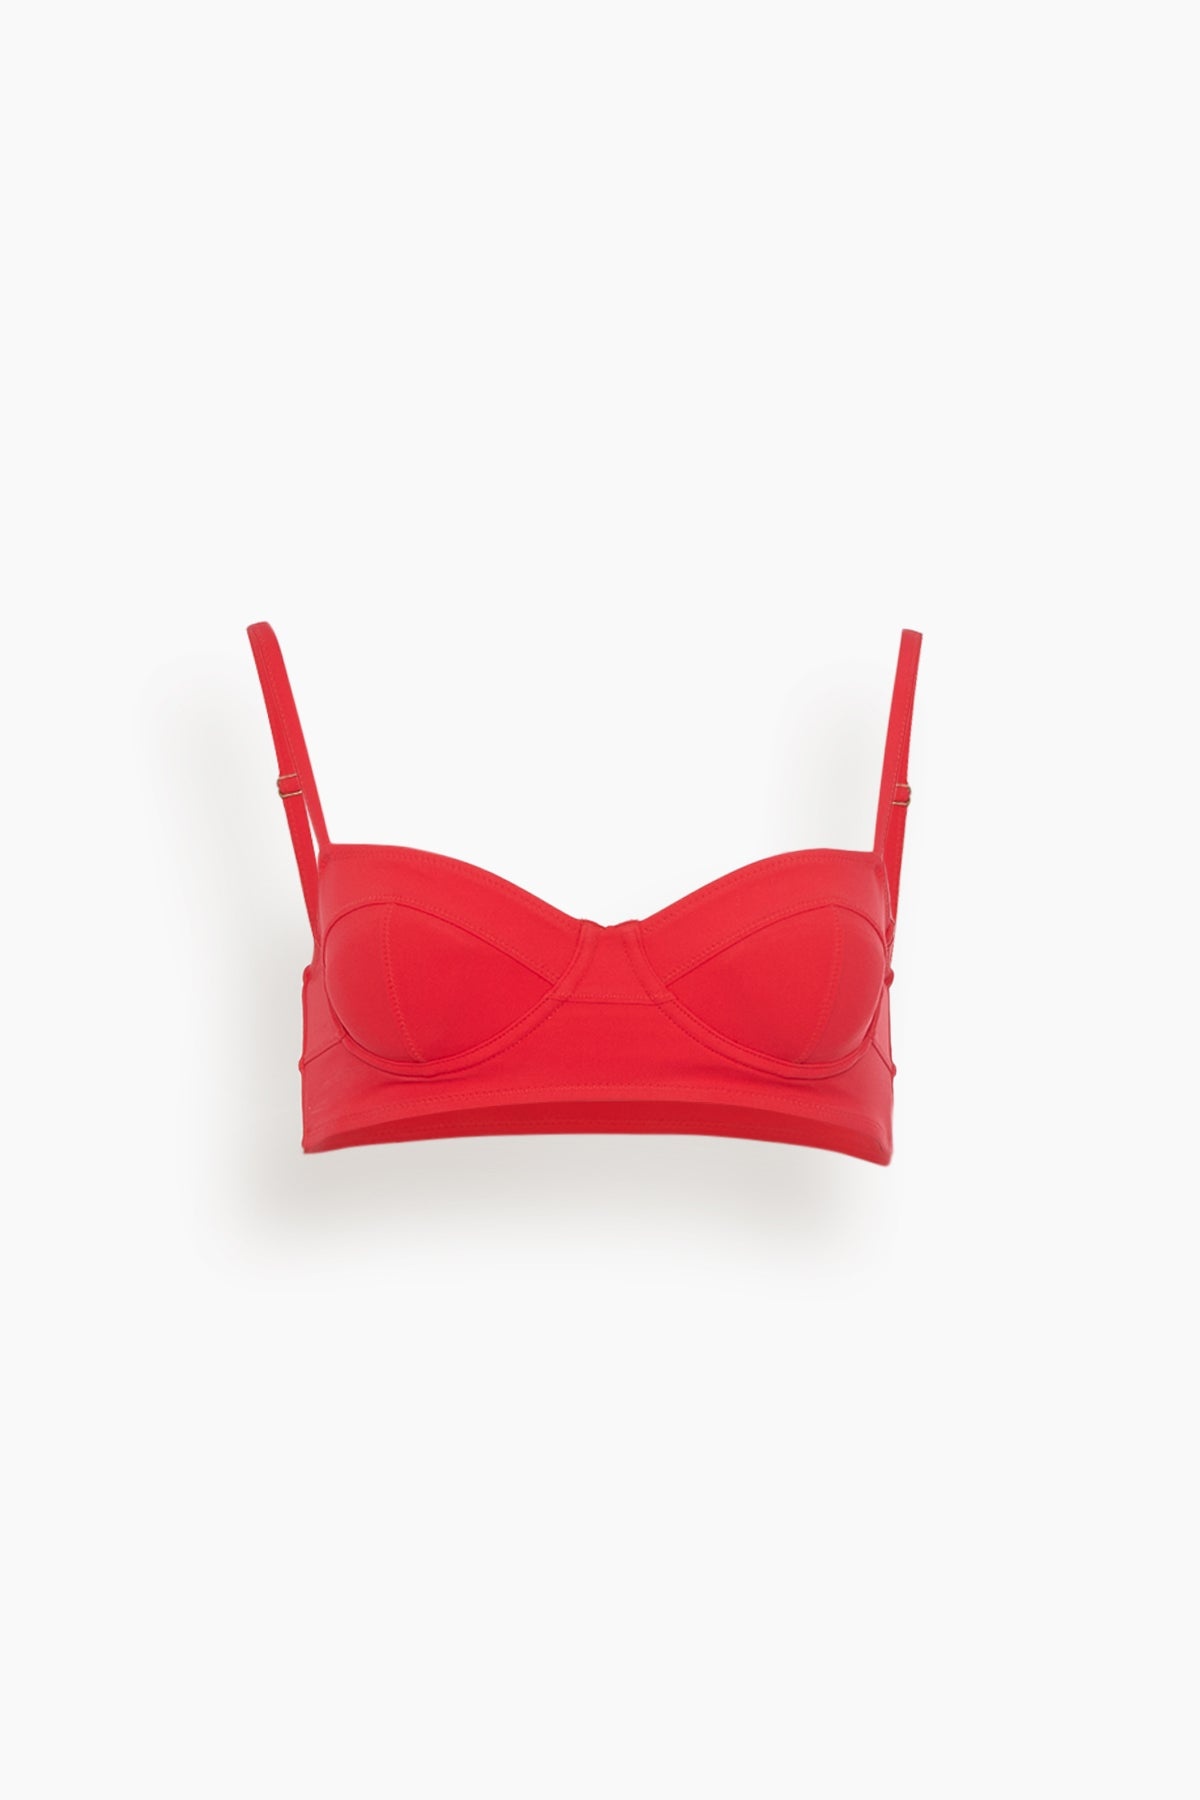 Zahara Bikini Top in Scarlet - 1